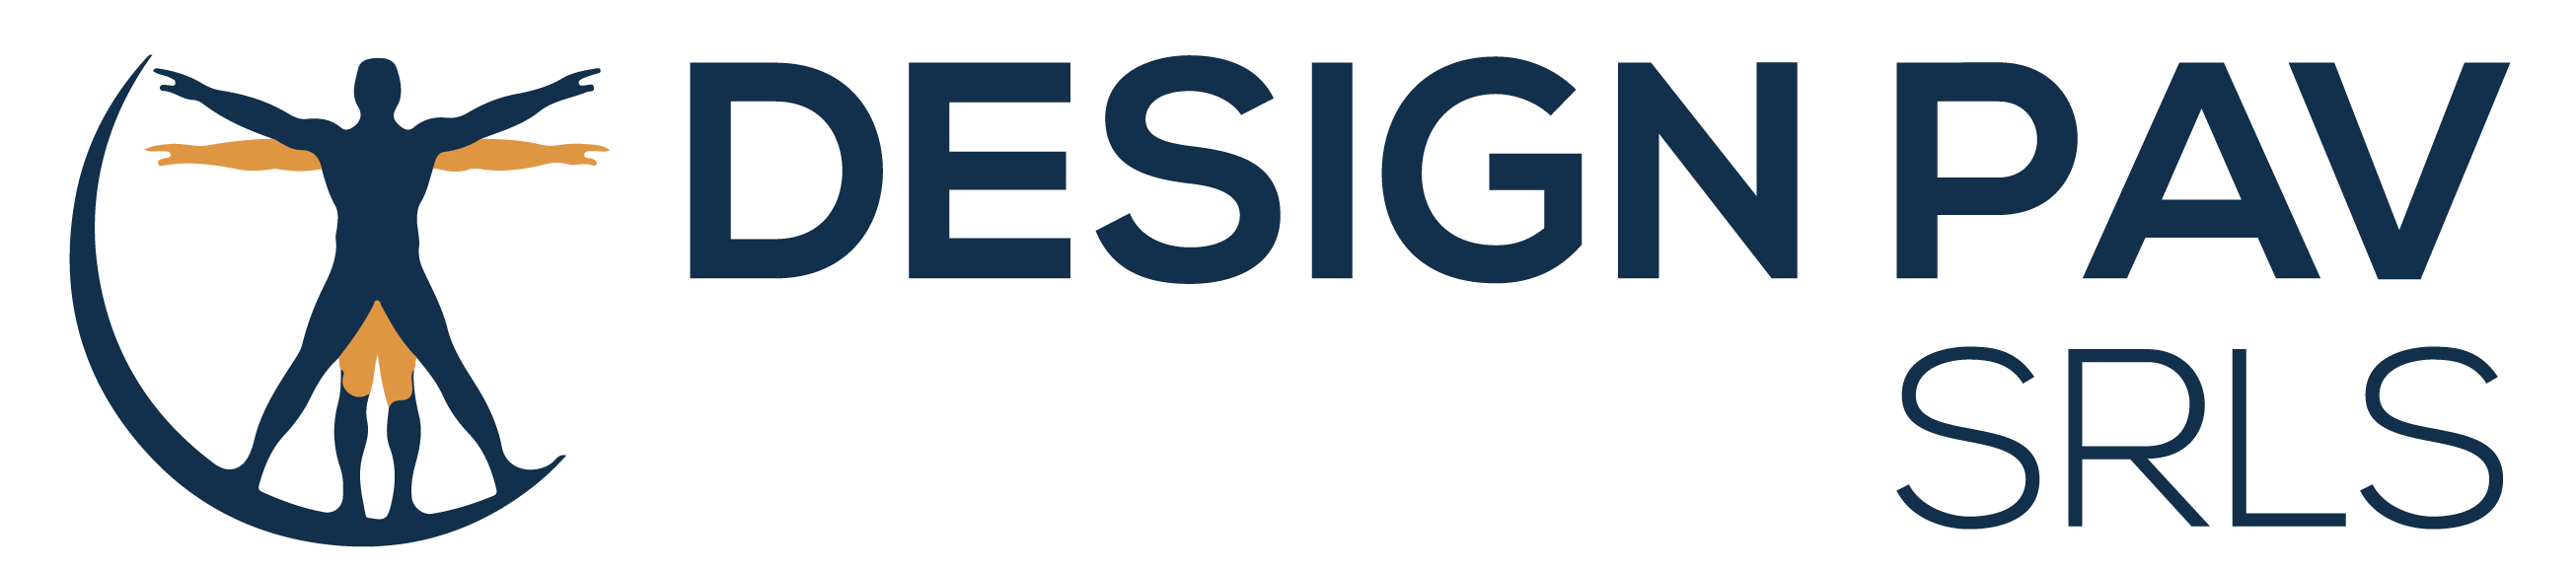 DesignPav